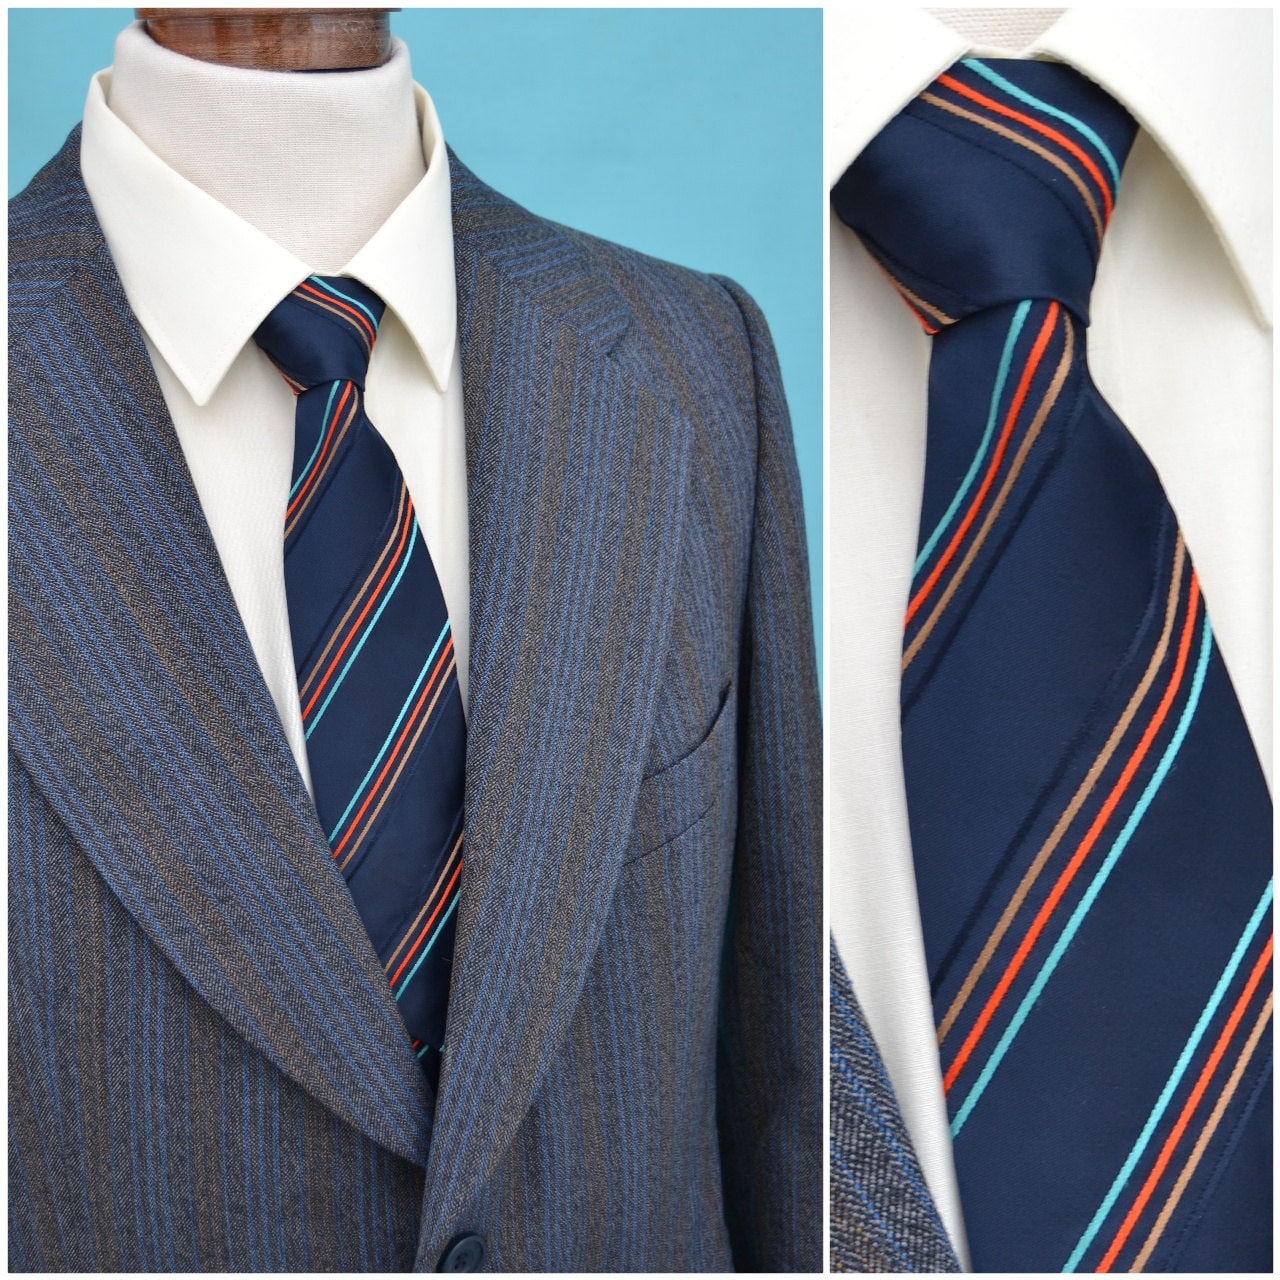 Vintage necktie, 1960s gentlemen’s neck tie, classic self tie styling ...